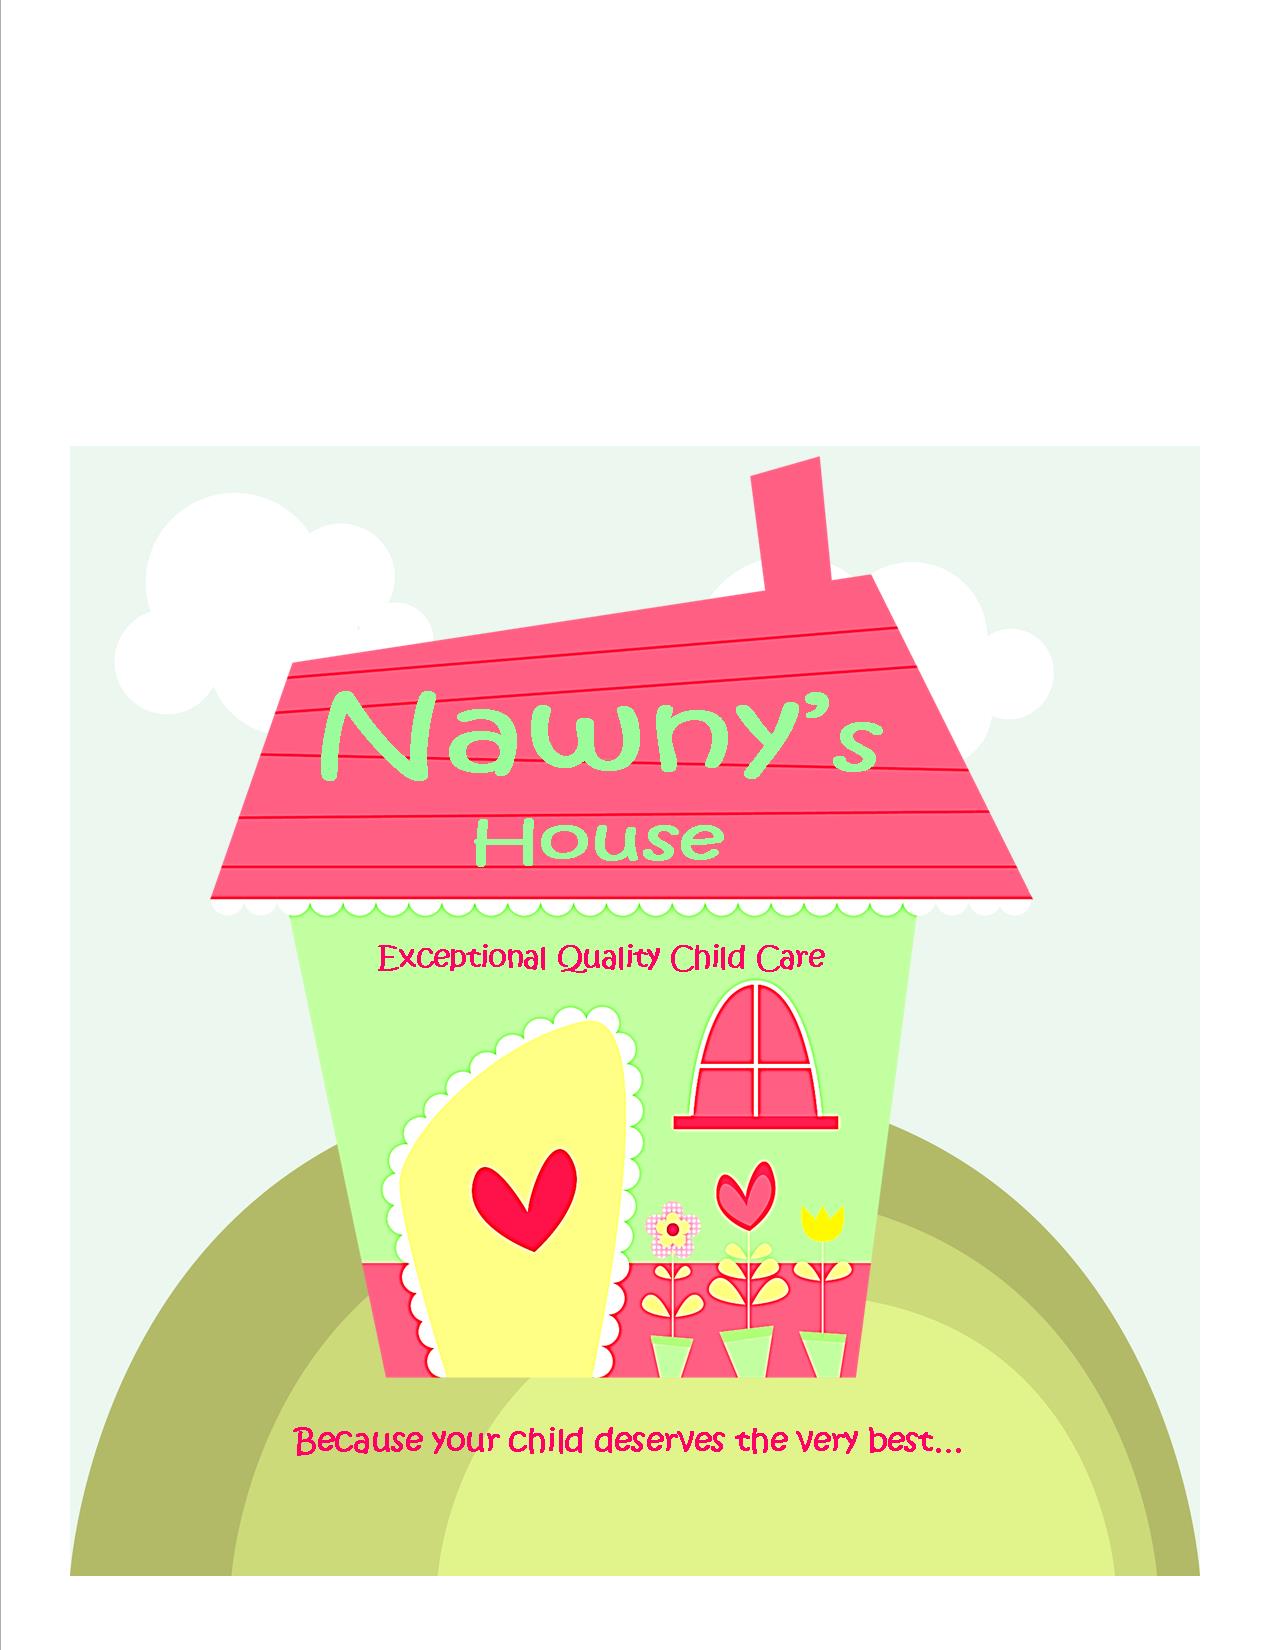 Nawny's House